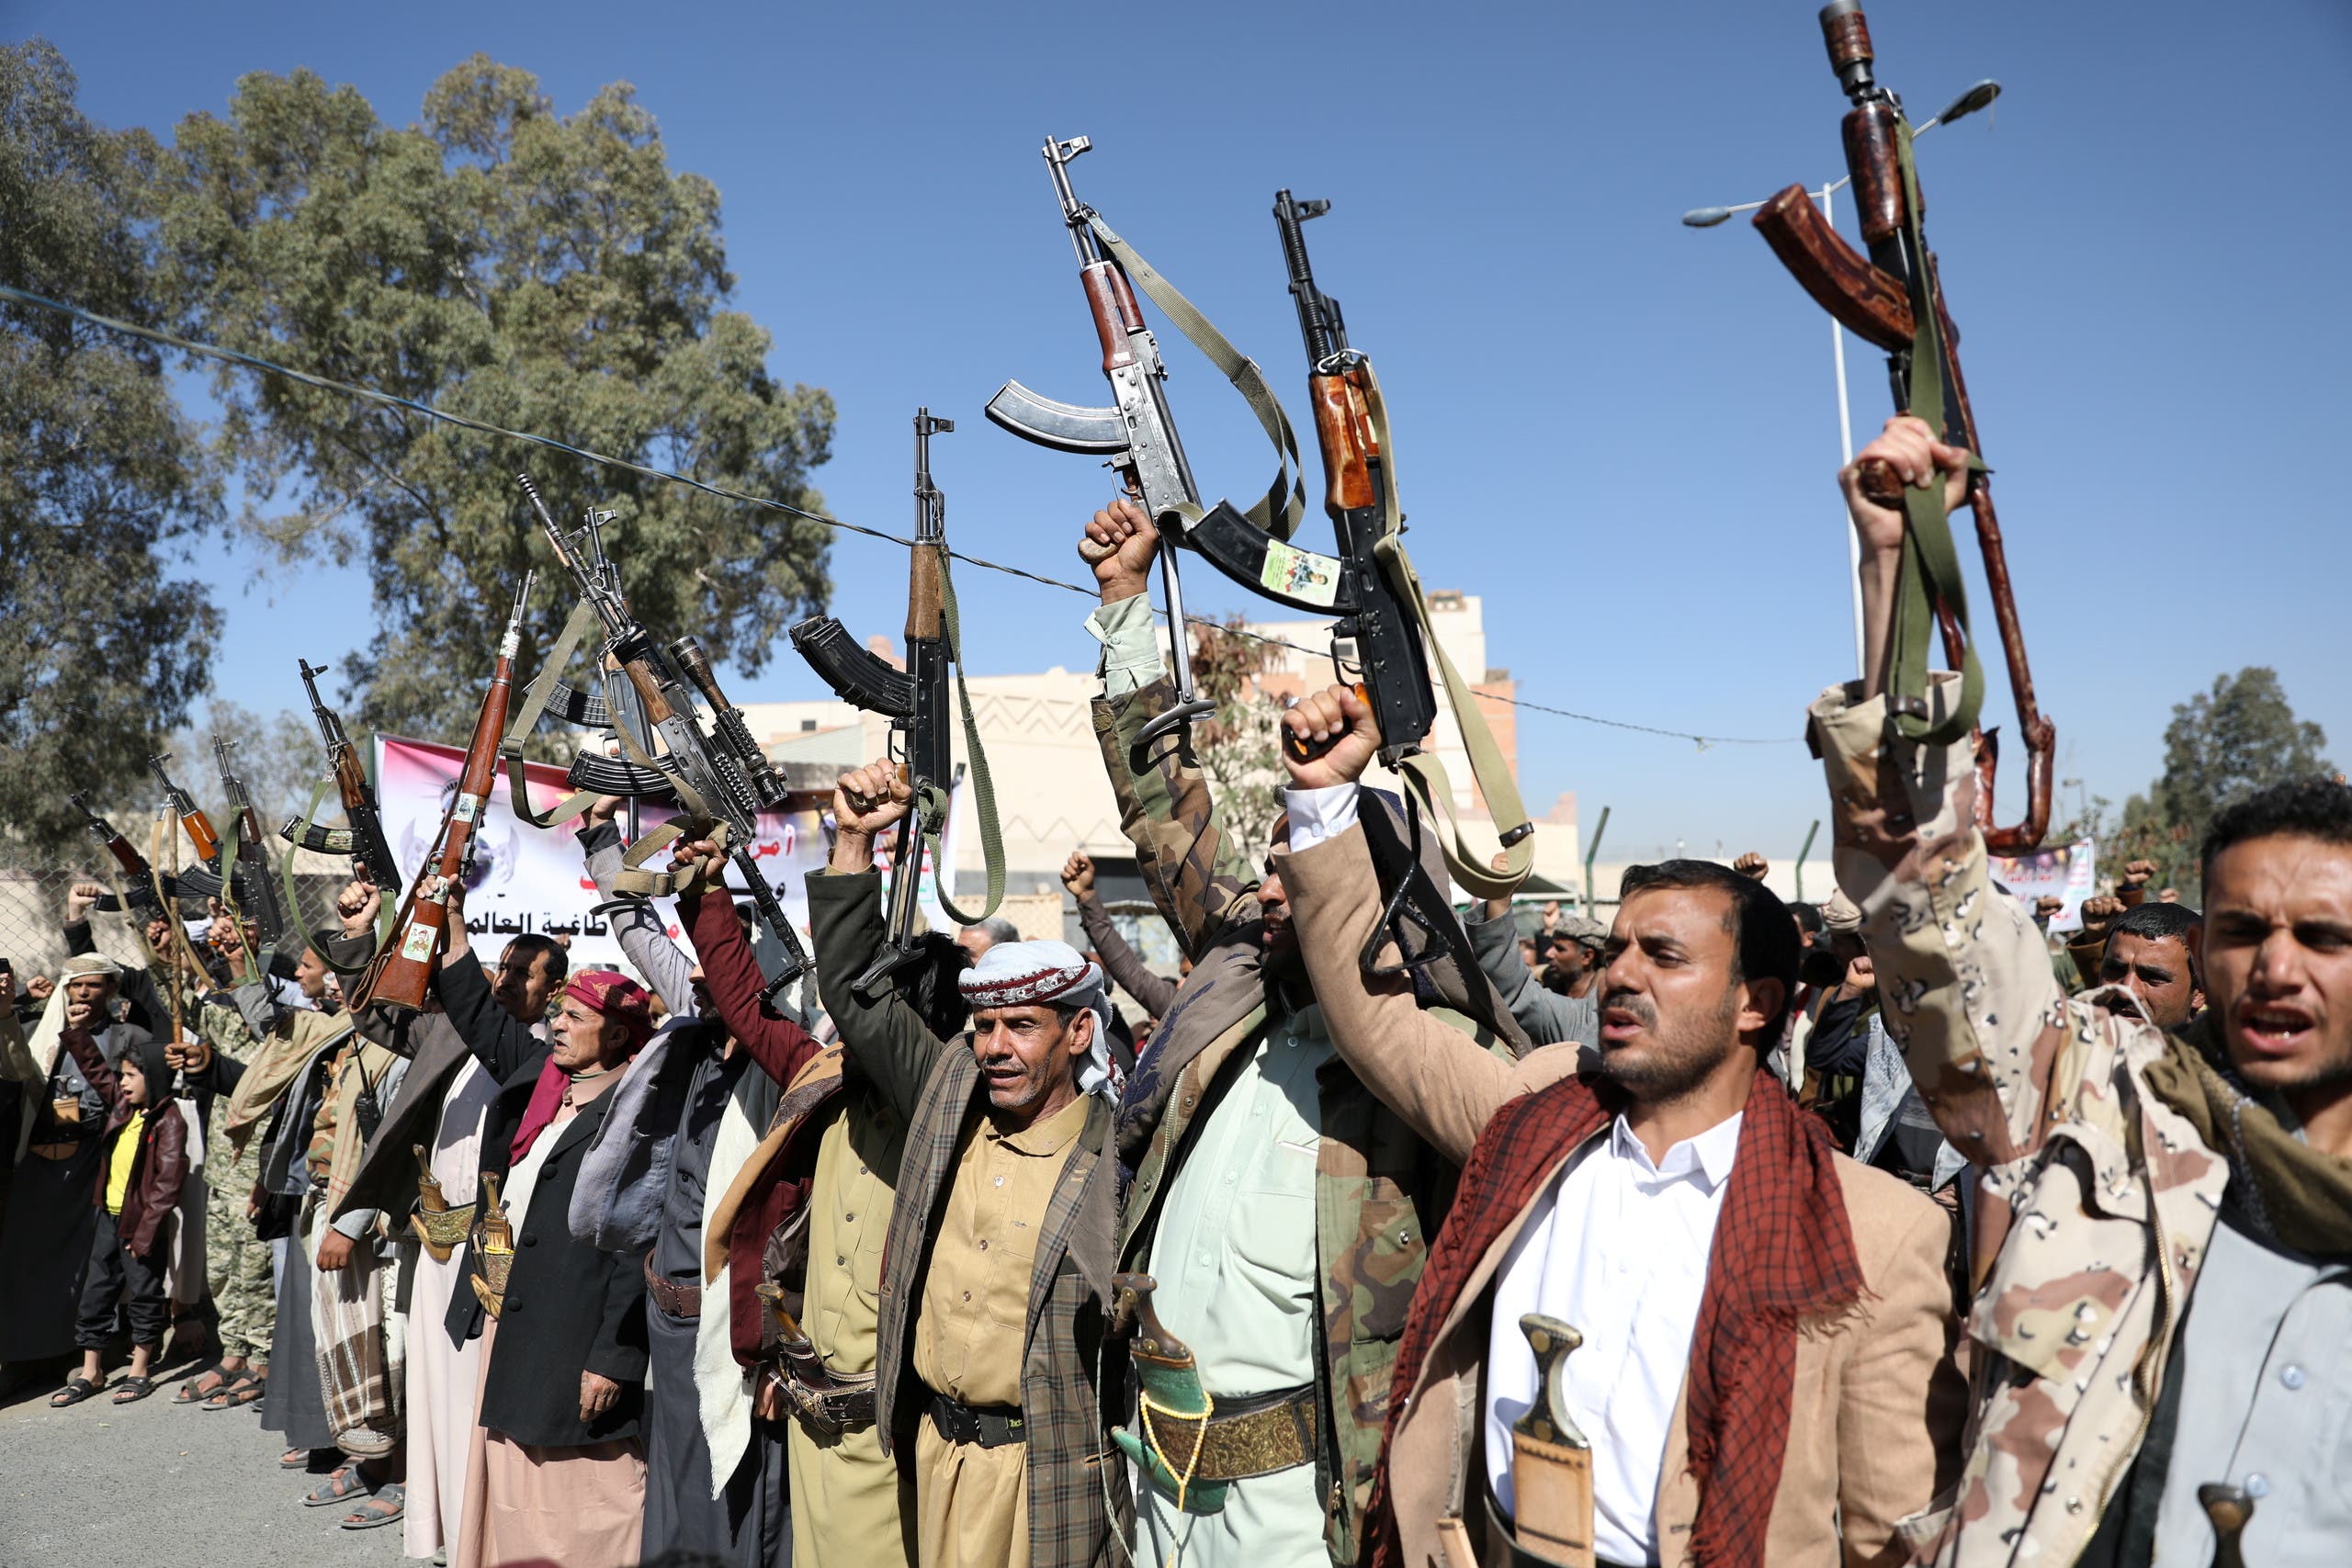 بريطانيا: نعي خطورة الحوثيين وإيران تمدهم بالسلاح